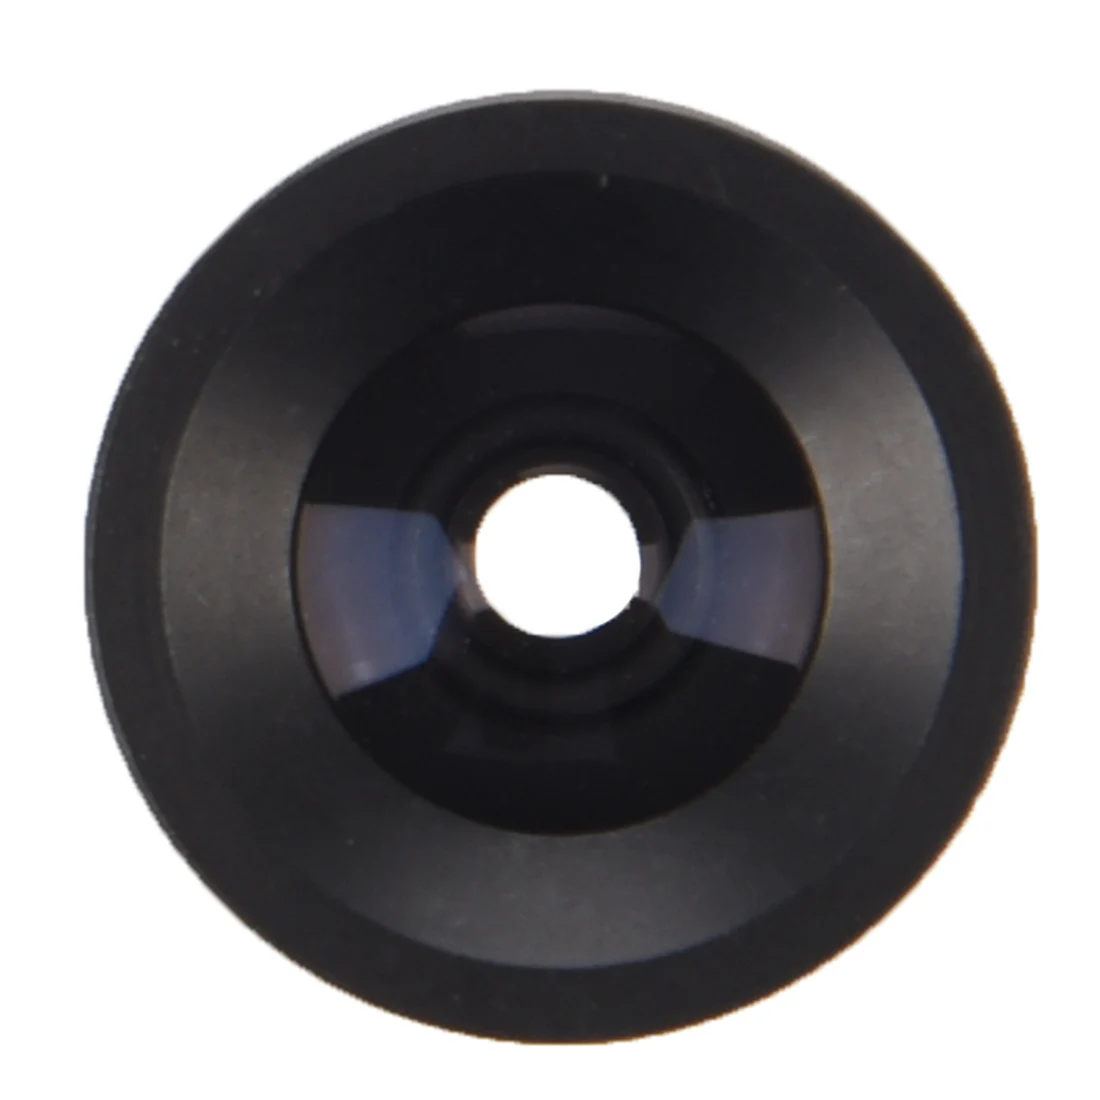 6 мм 54 градусов угол ИК фиксированная плата объектив фокусное расстояние для 1/3 камера CCD CCTV